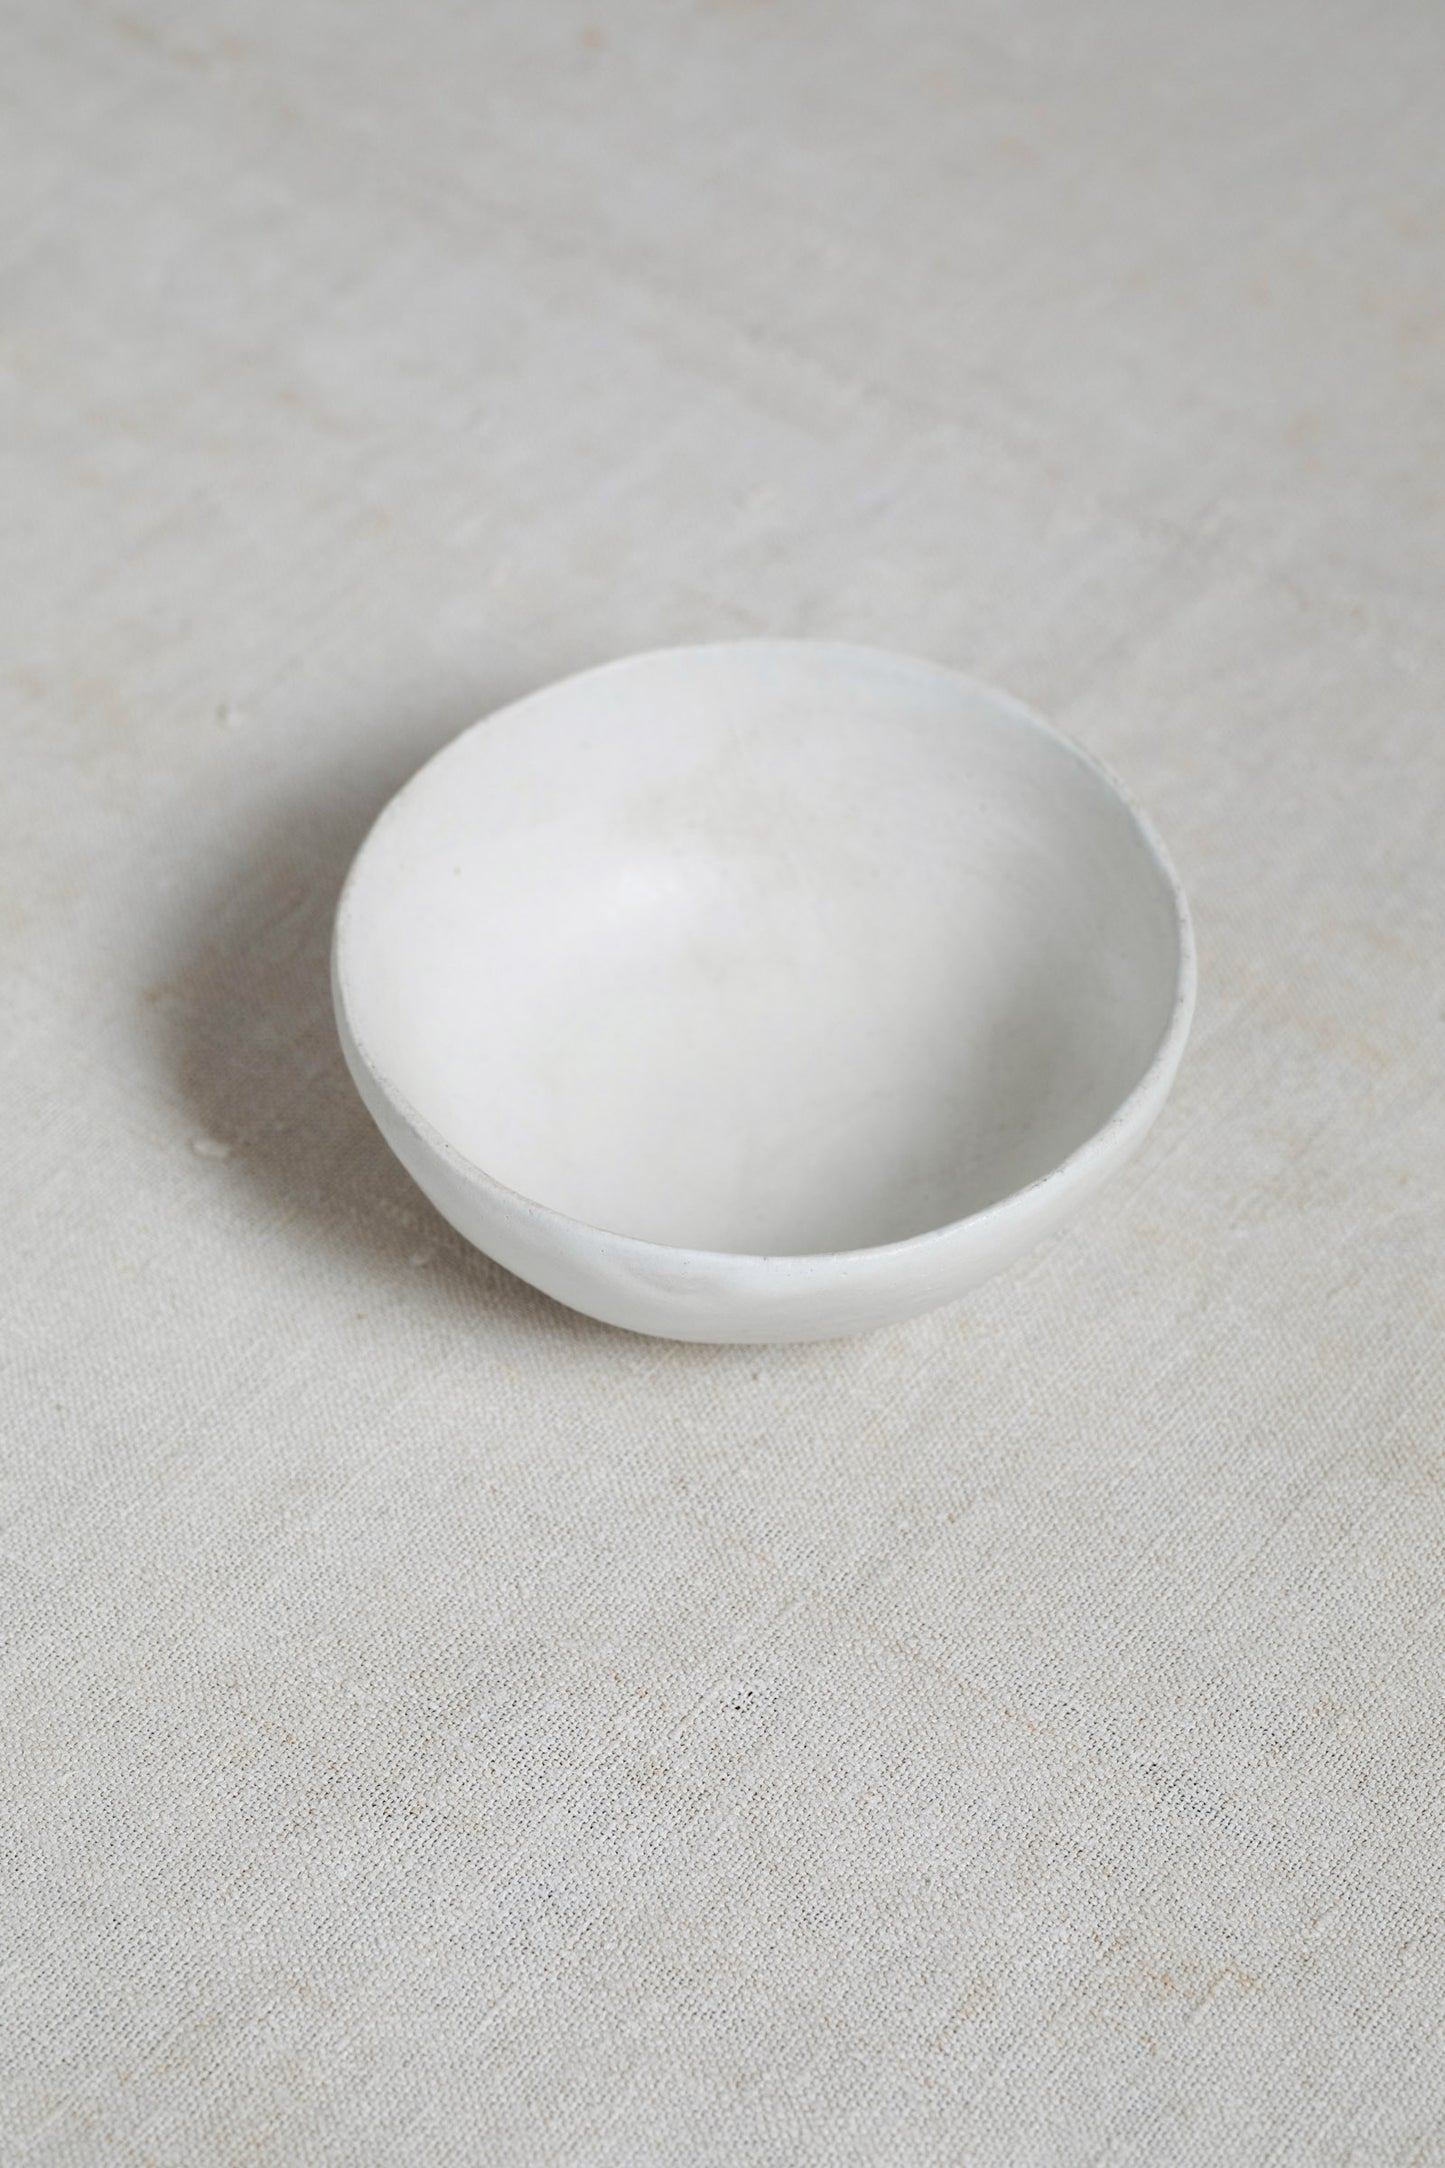 Blanc, appetizer bowl